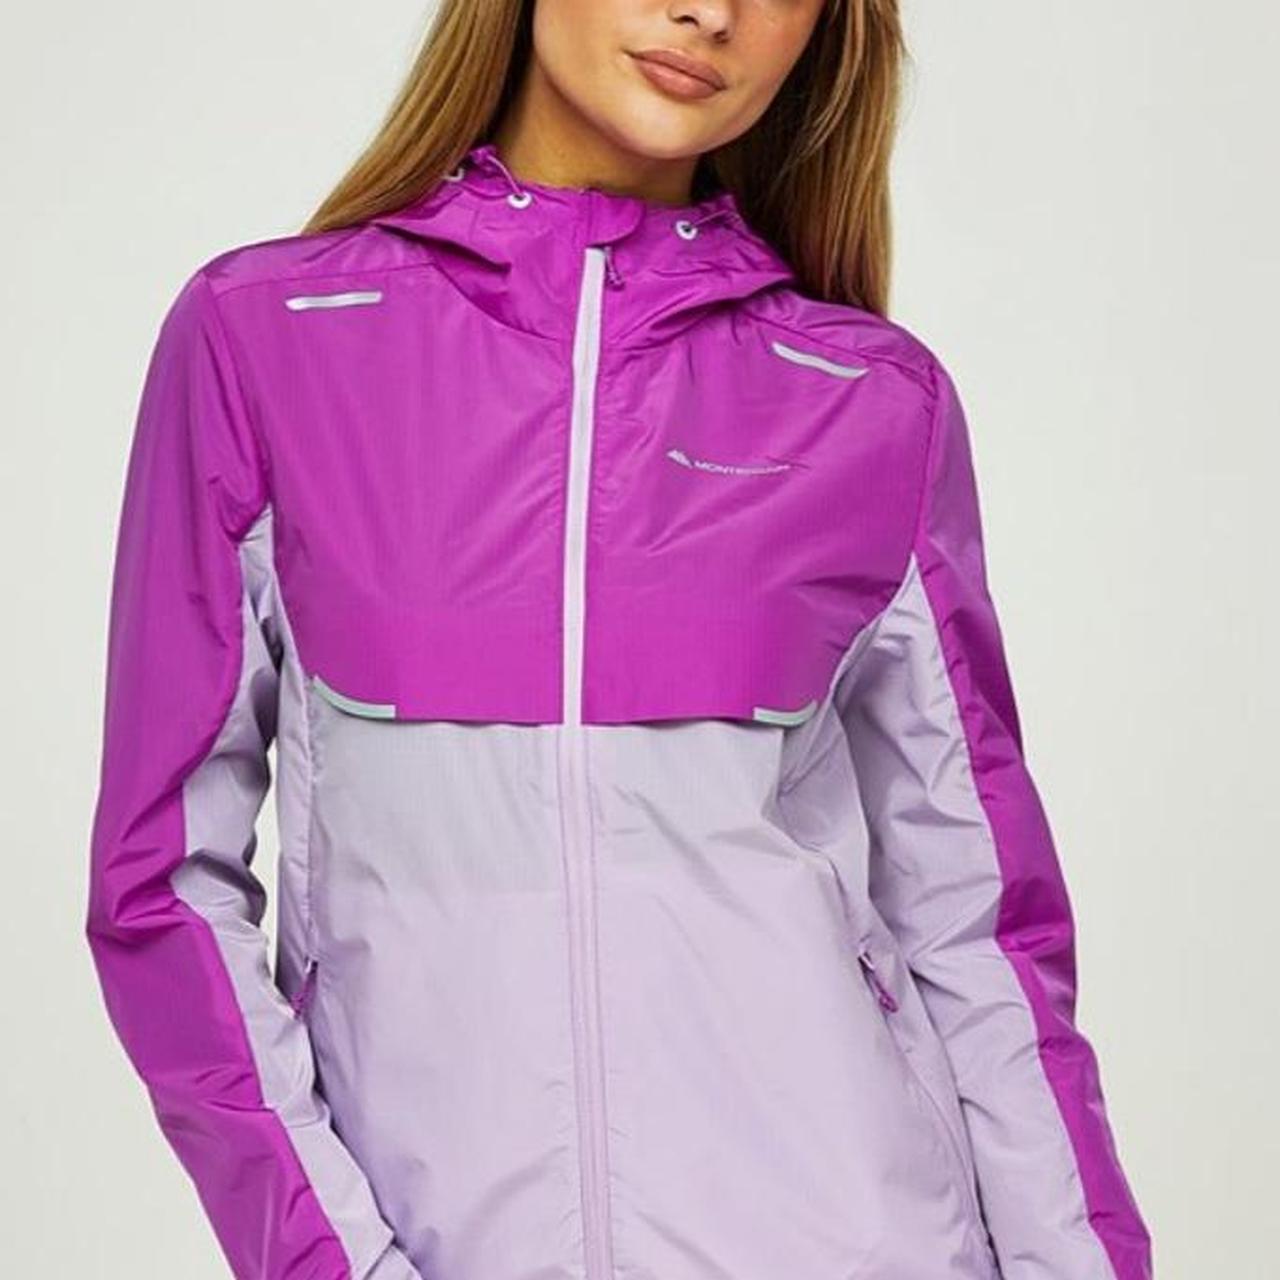 Monterrain purple wind breaker great jacket I have - Depop